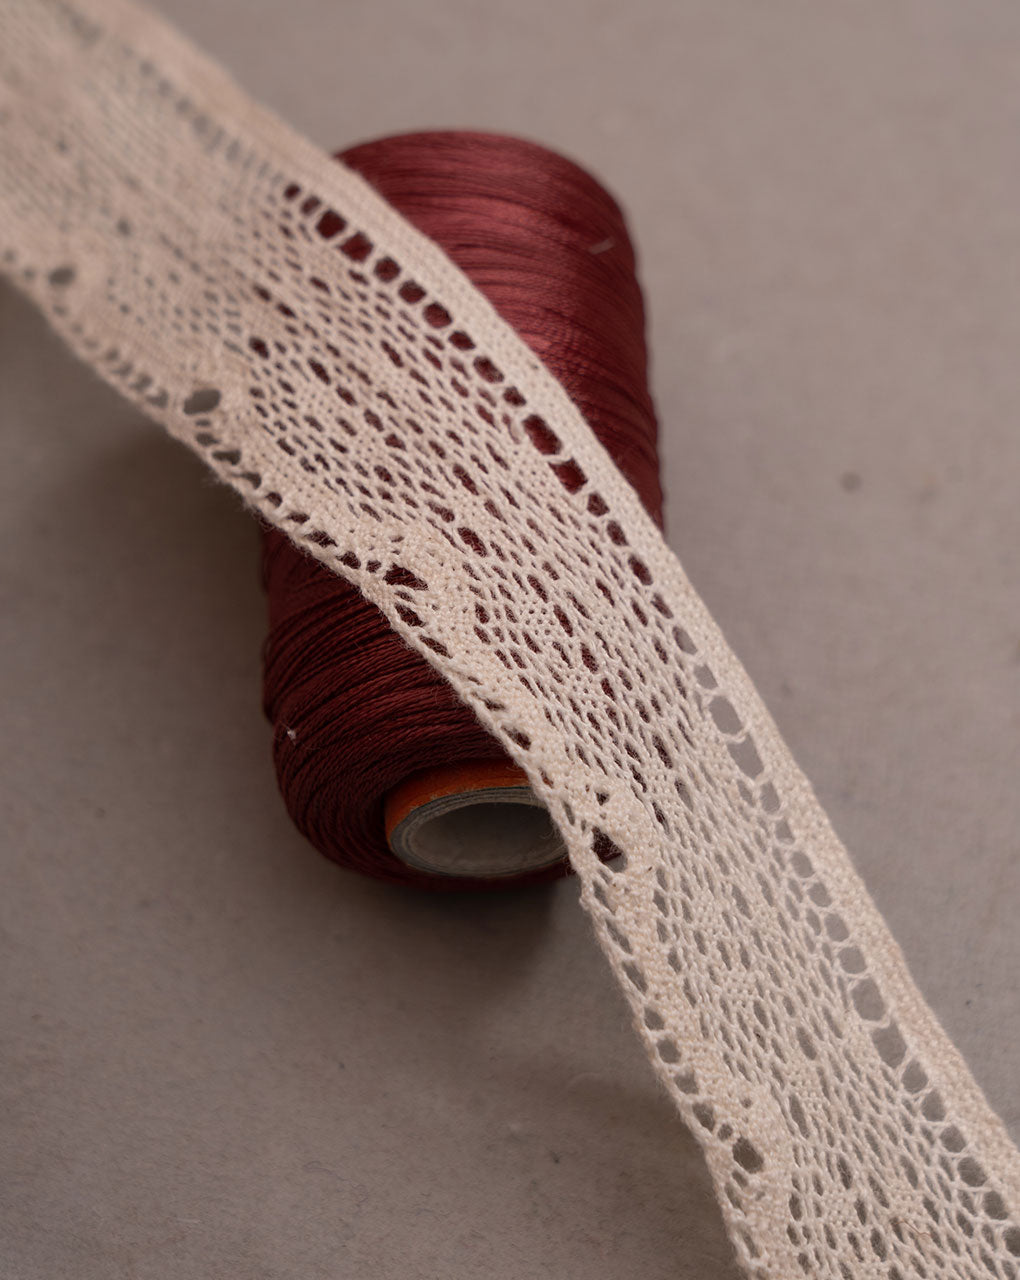 Dyeable Crochet Cotton Lace - Fabriclore.com